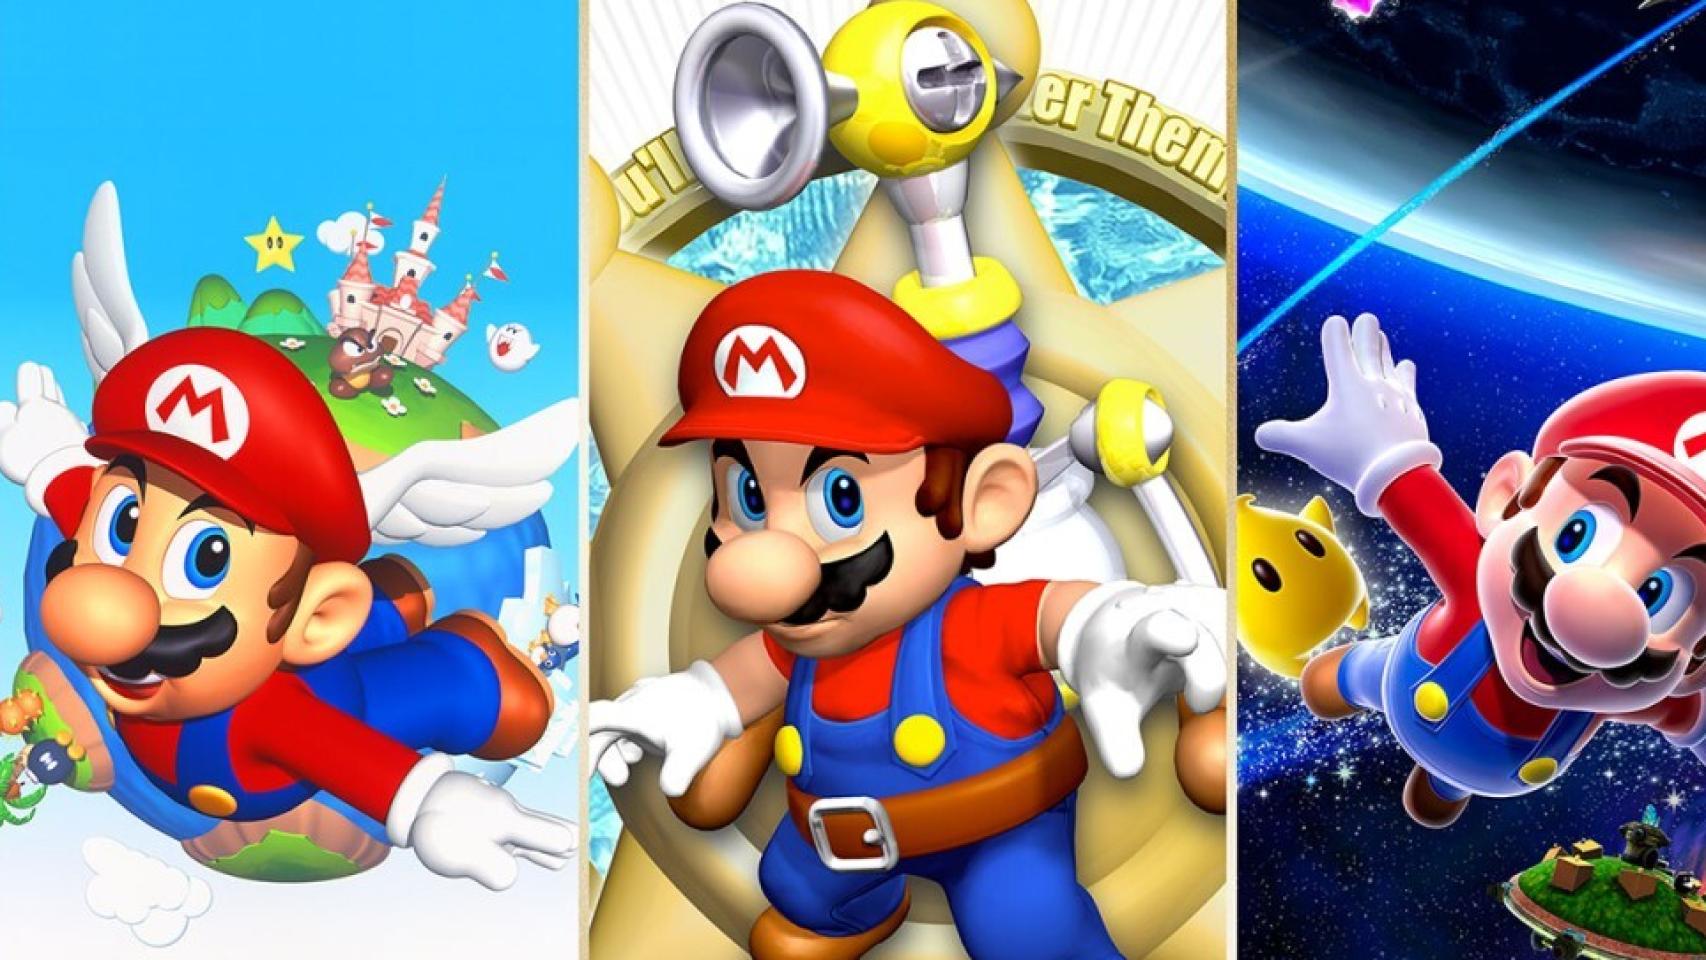 Shigeru Miyamoto, creador de Super Mario Bros, afirma que el único